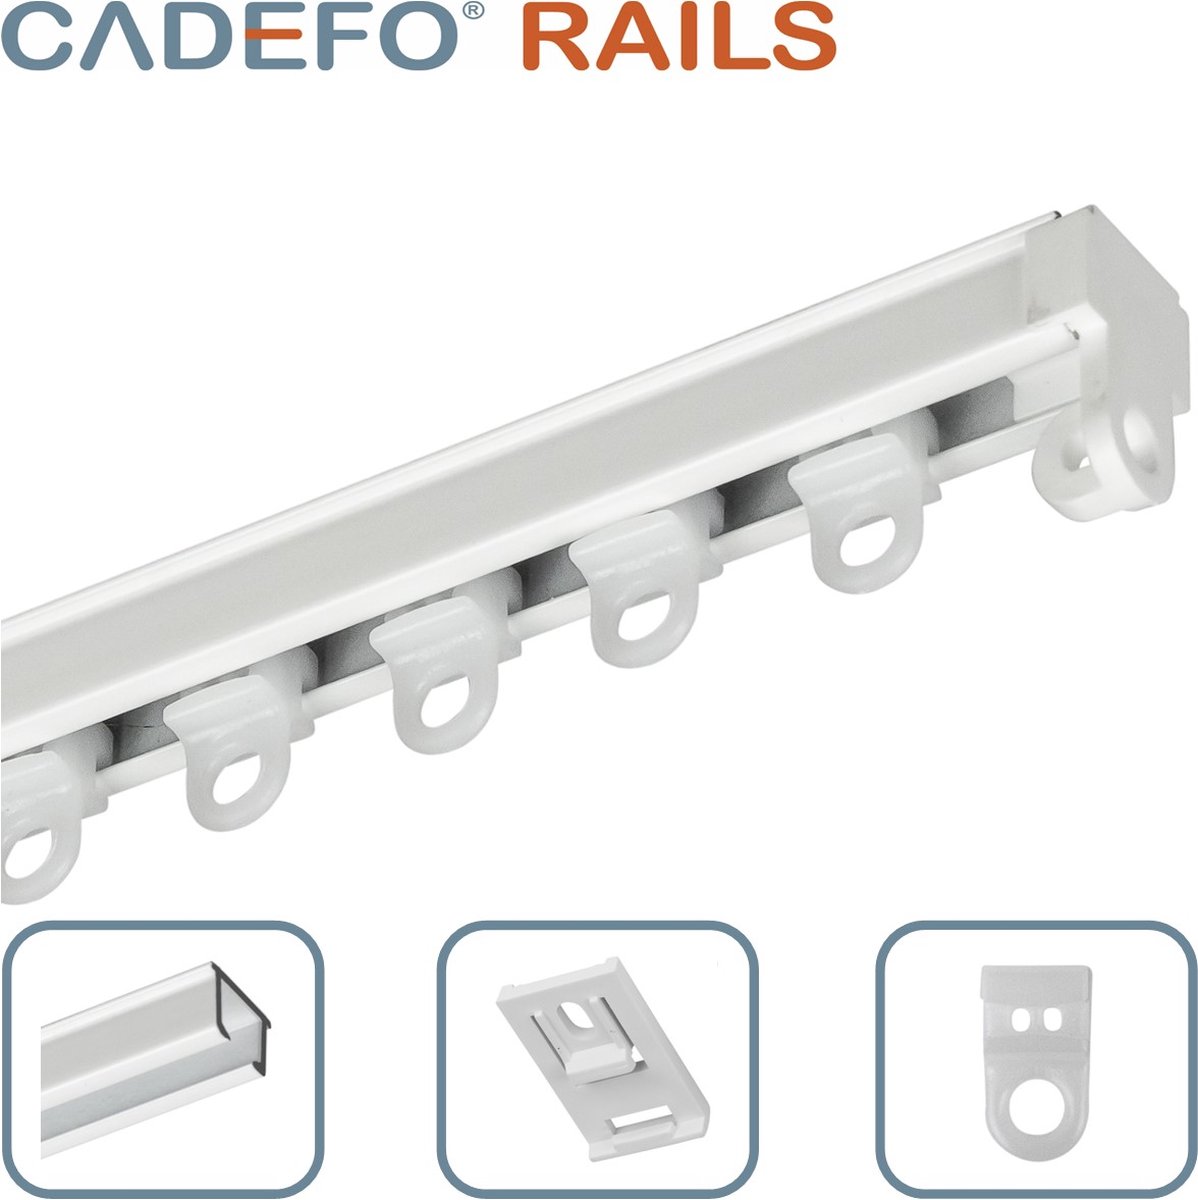 CADEFO RAILS (251 - 300 cm) Gordijnrails - Compleet op maat! - UIT 1 STUK - Leverbaar tot 6 meter - Plafondbevestiging - Lengte 266 cm